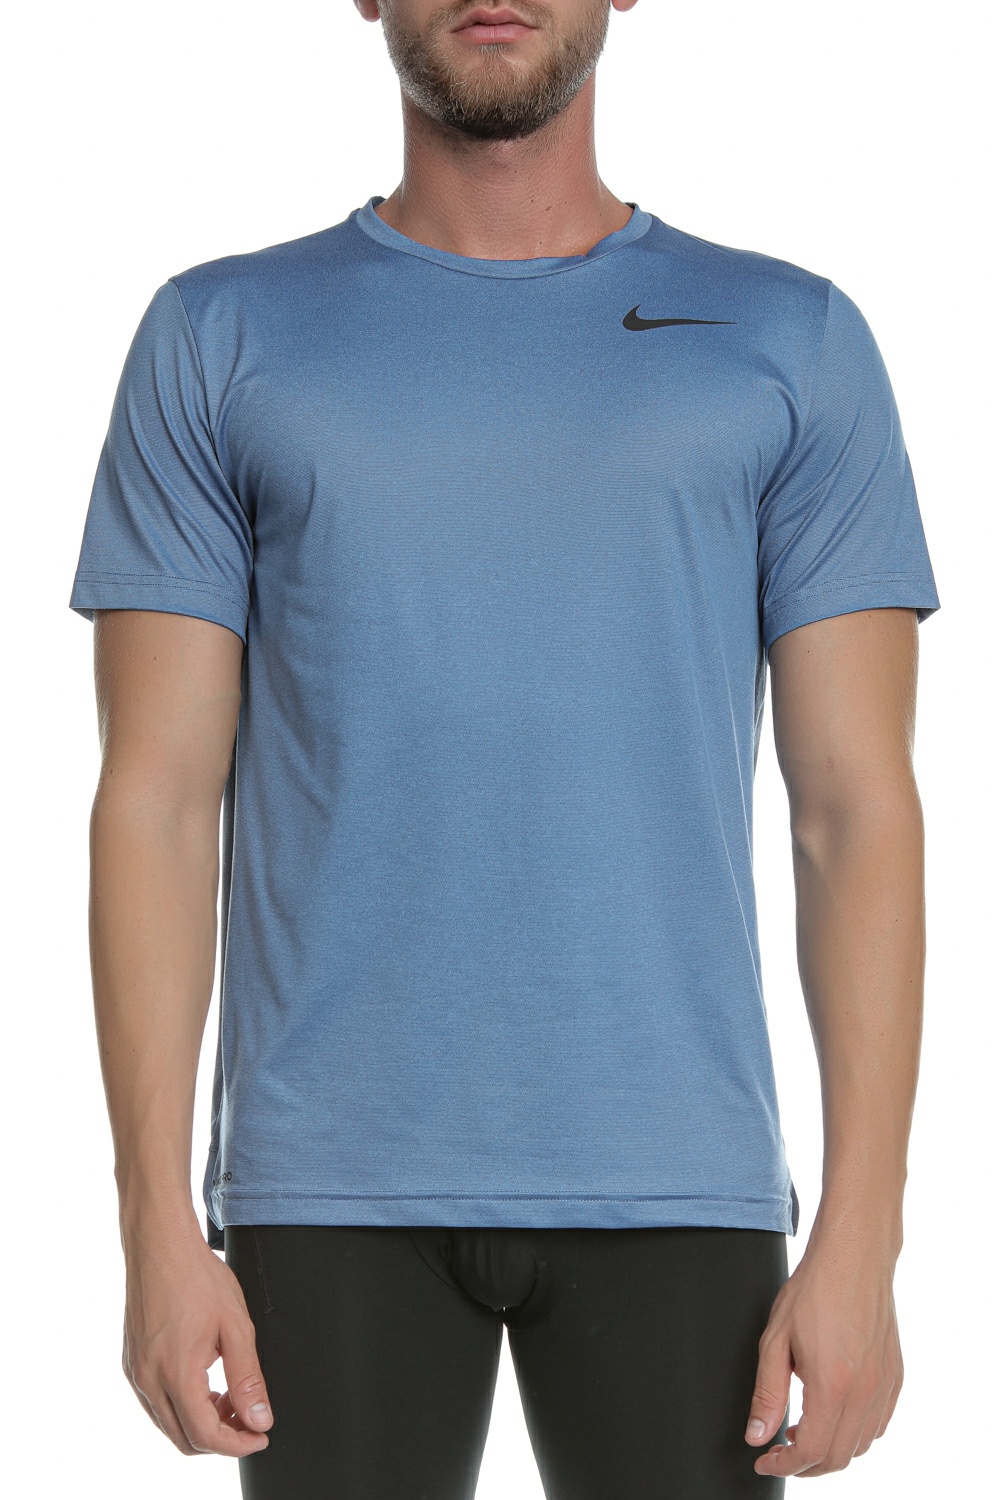 Ανδρικά/Ρούχα/Αθλητικά/T-shirt NIKE - Ανδρικό t-shirt NIKE HPR DRY μπλε